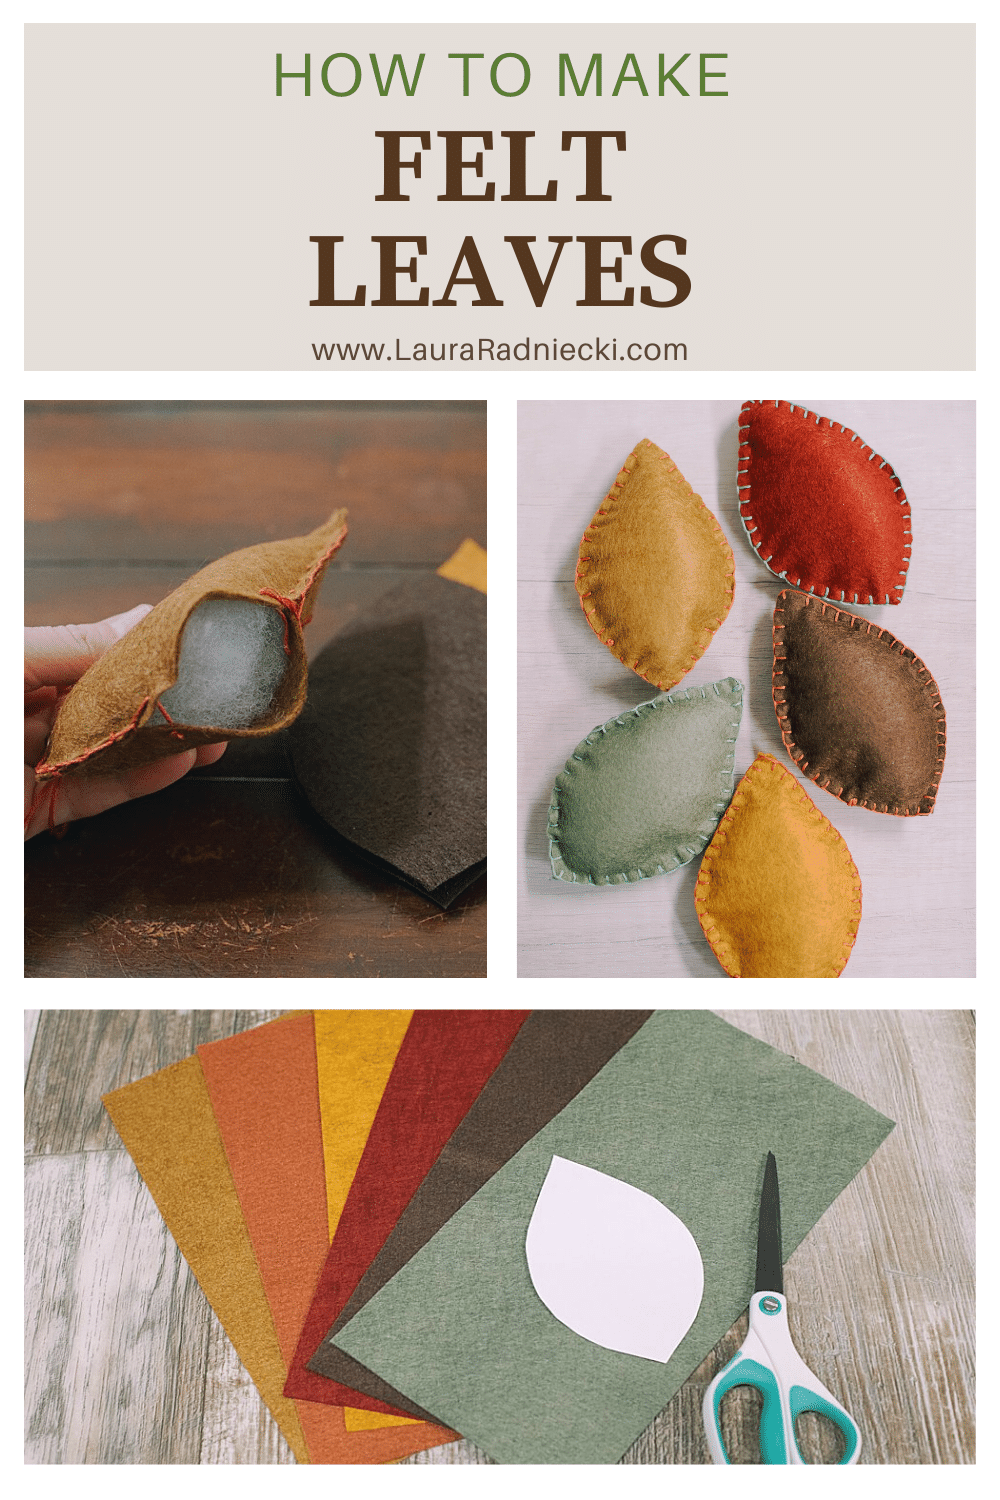 How to make felt leaves